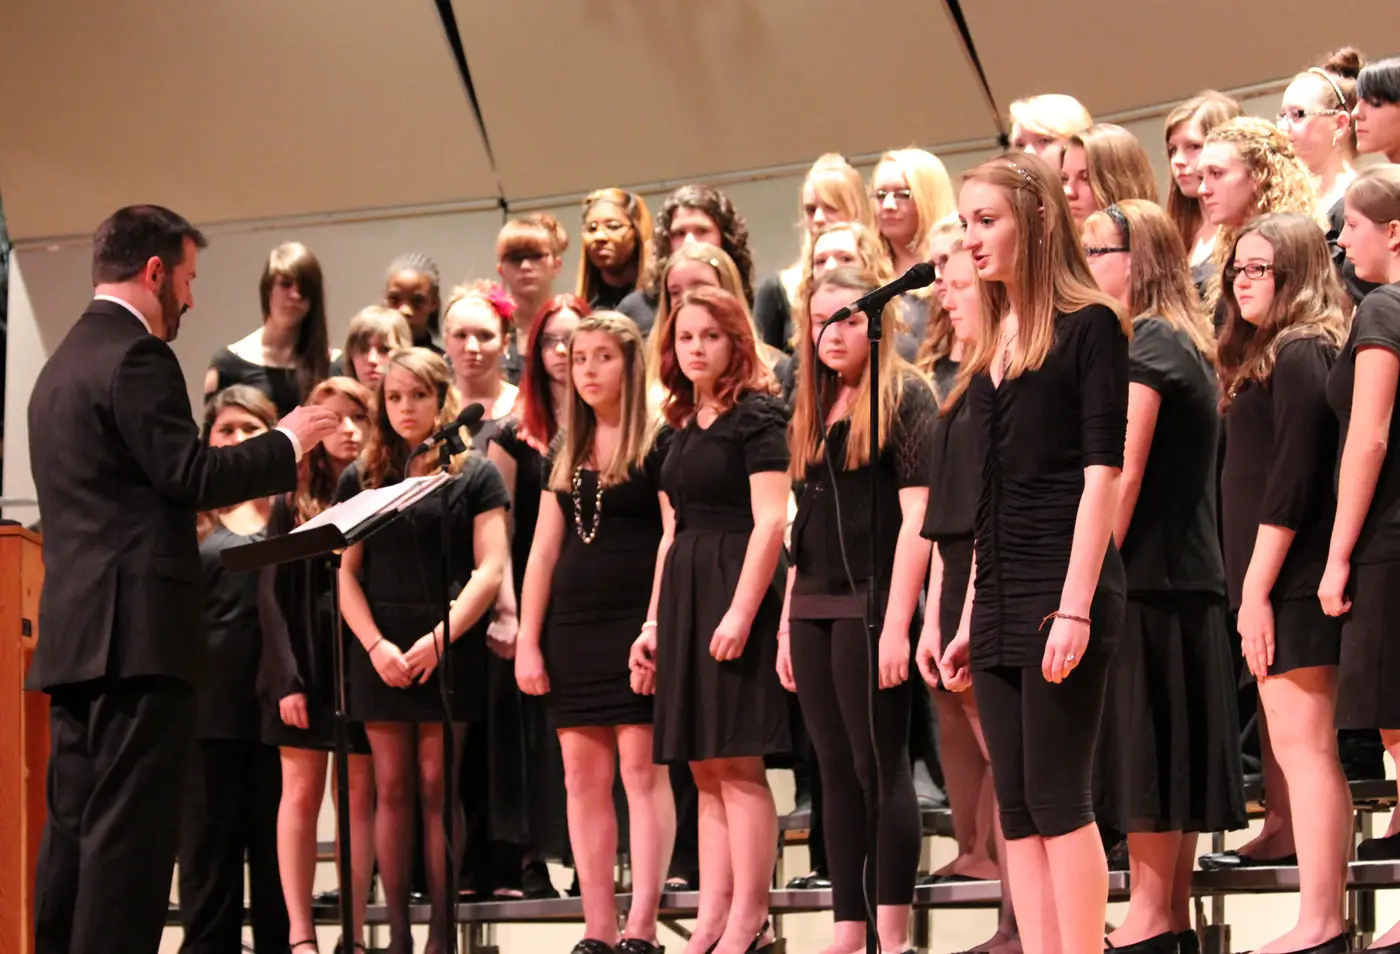 High School Choir The g. ray bodley high school